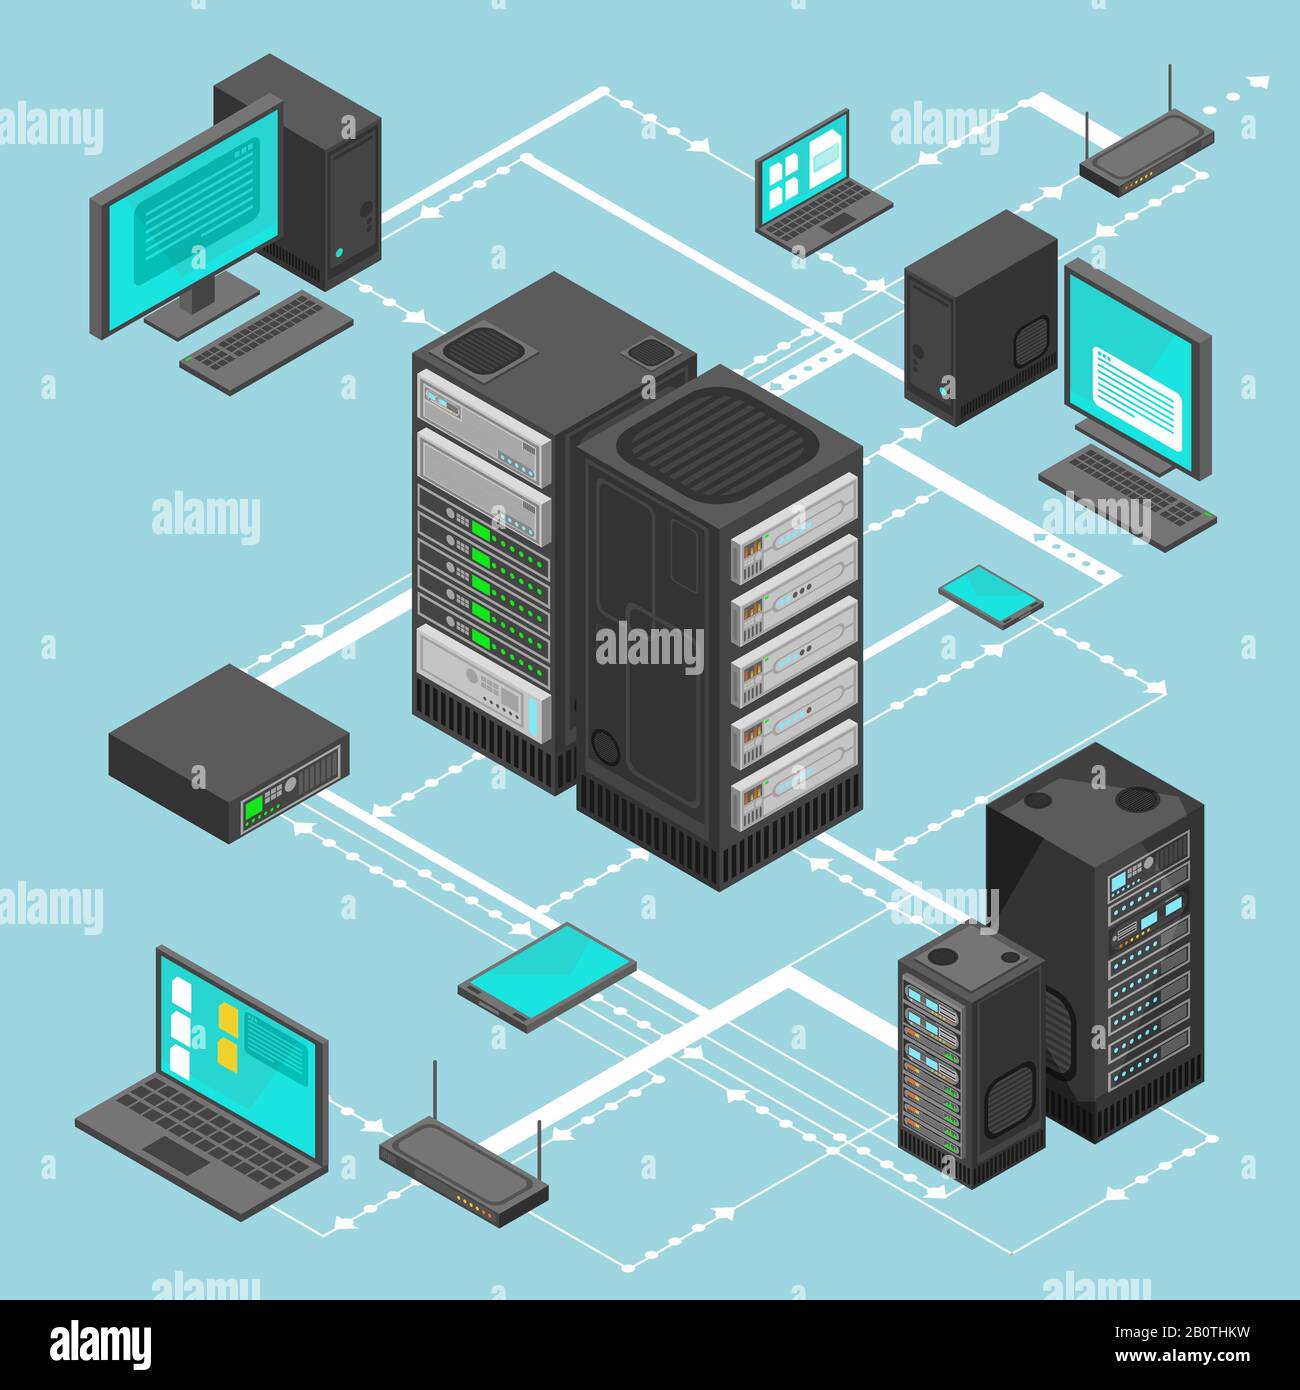 Vektor für die Datennetzwerkverwaltung - isometrische Karte mit Netzwerkservern, Computern und Geräten für Unternehmen. Abbildung der Dateninformationszuordnung für Server Stock Vektor